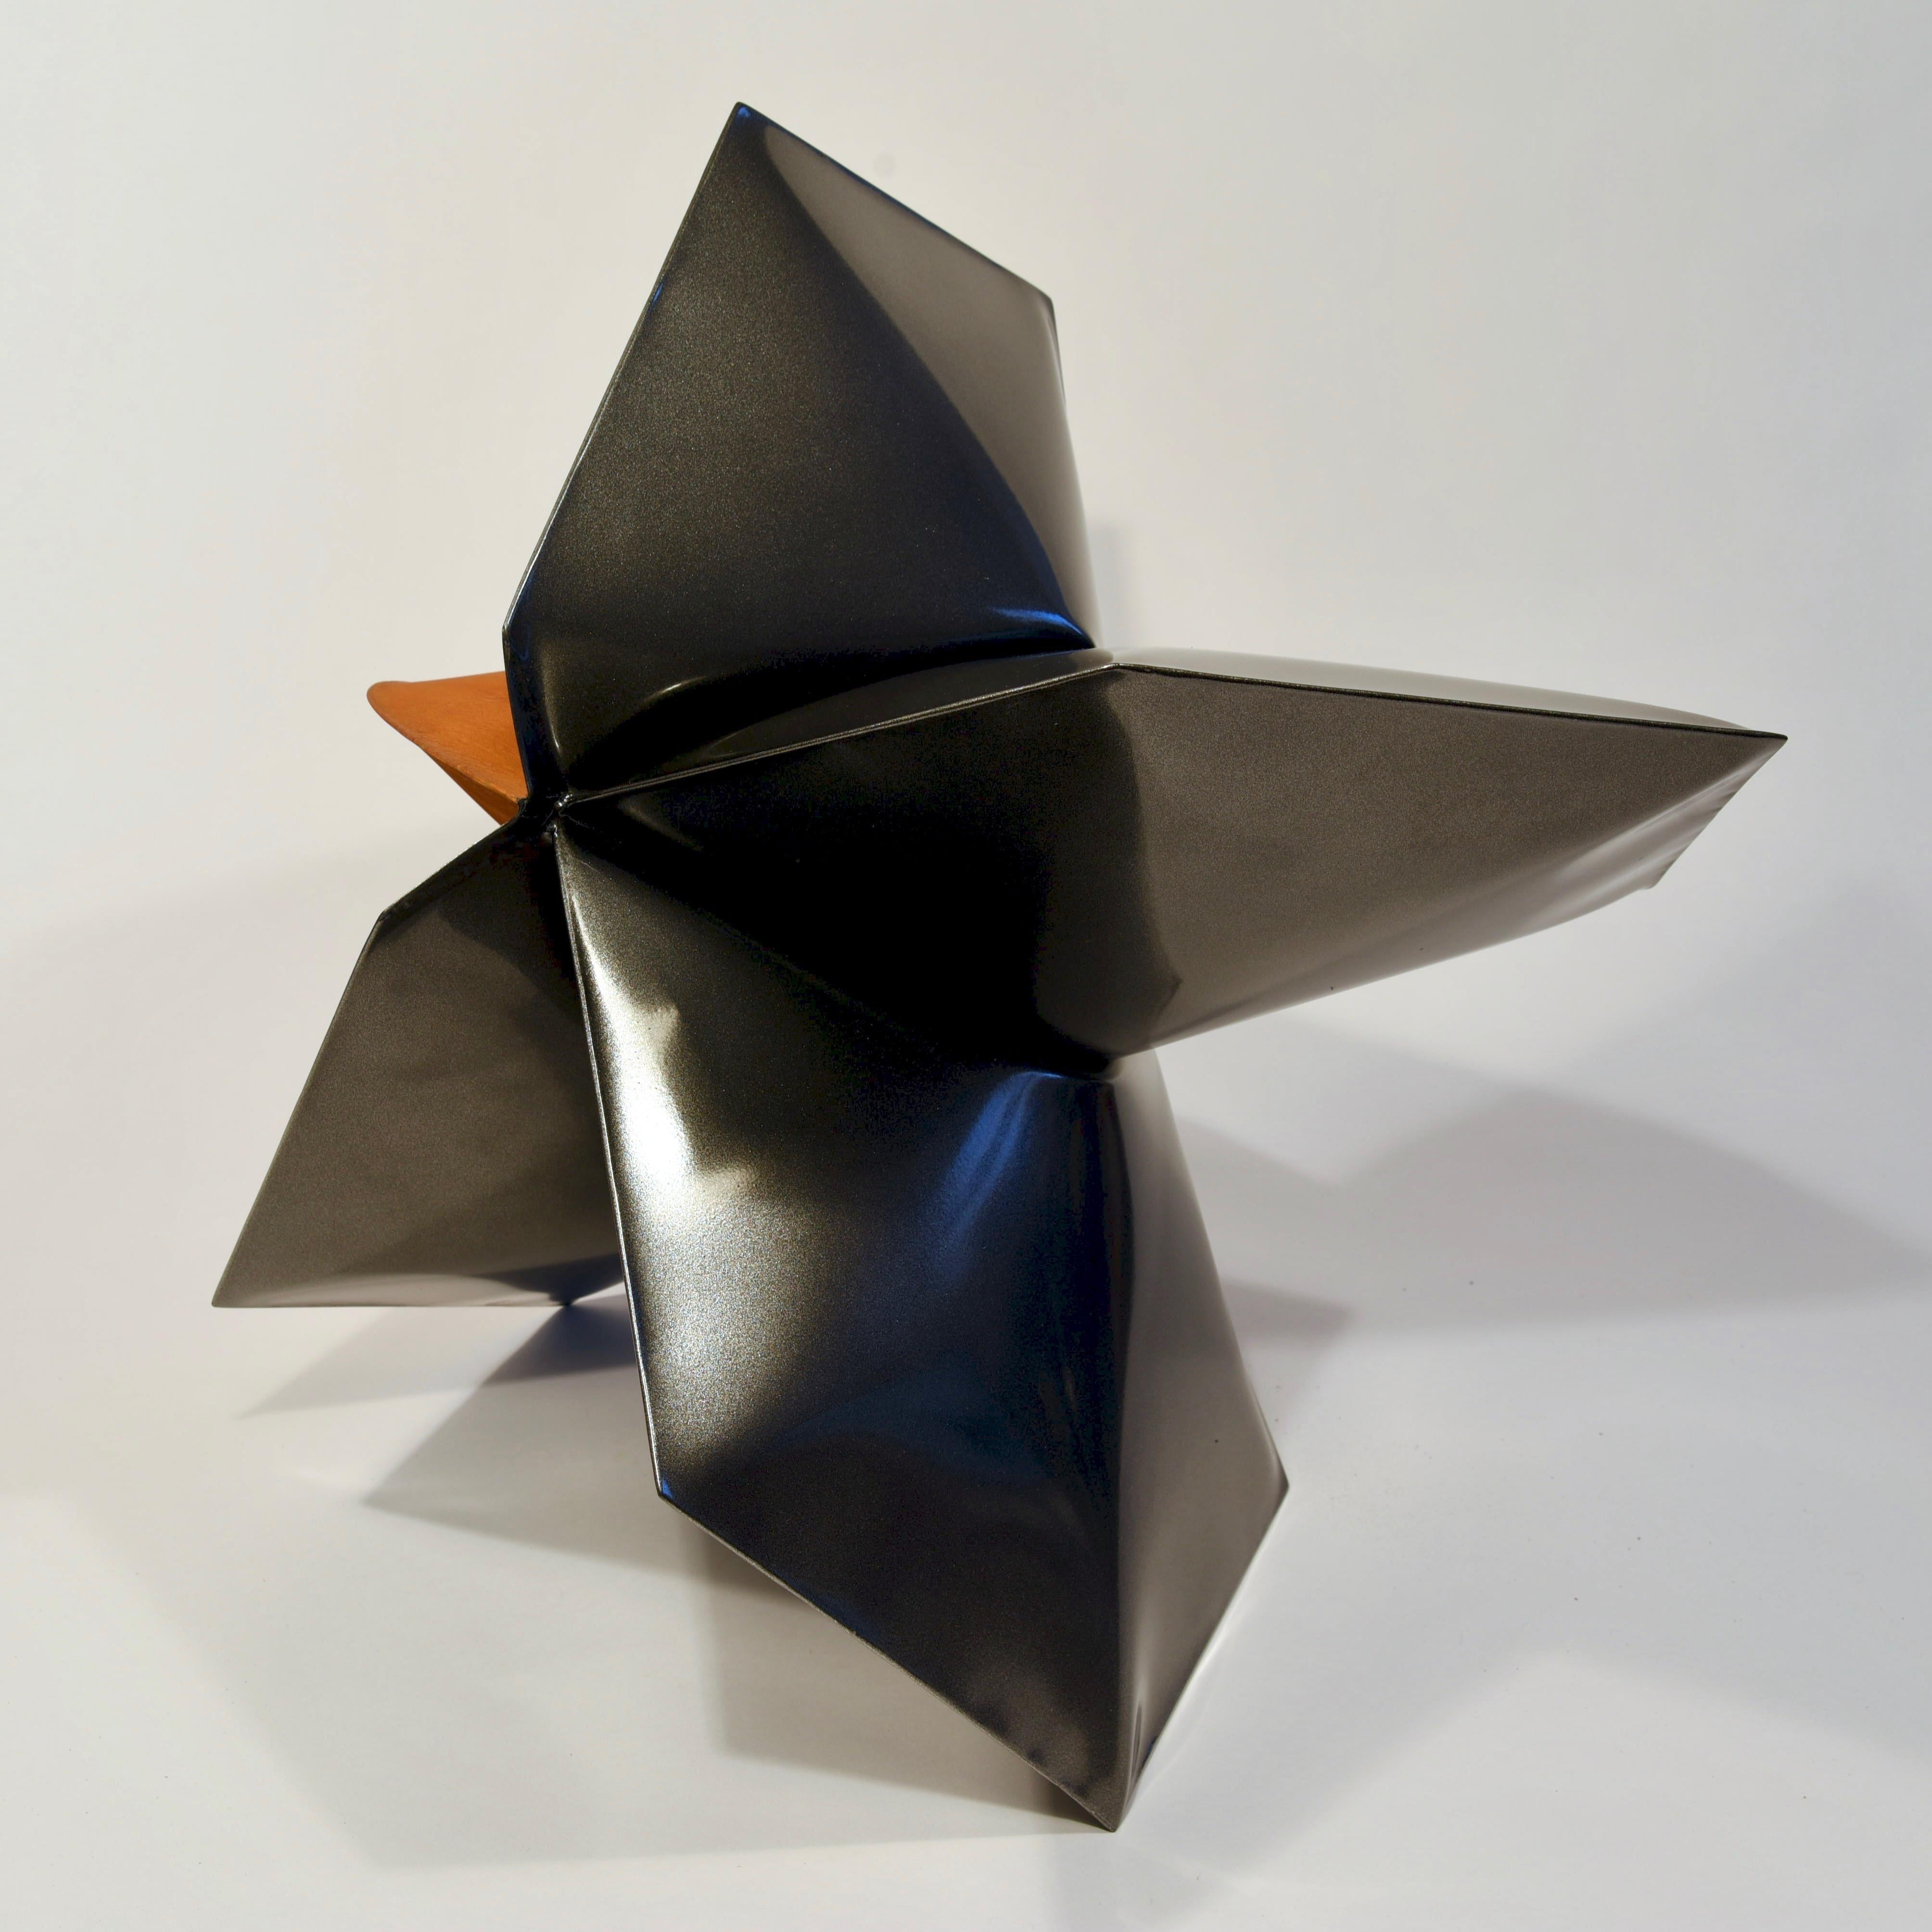 Ovintiv Grey - Contemporary Sculpture by Jeremy Thomas